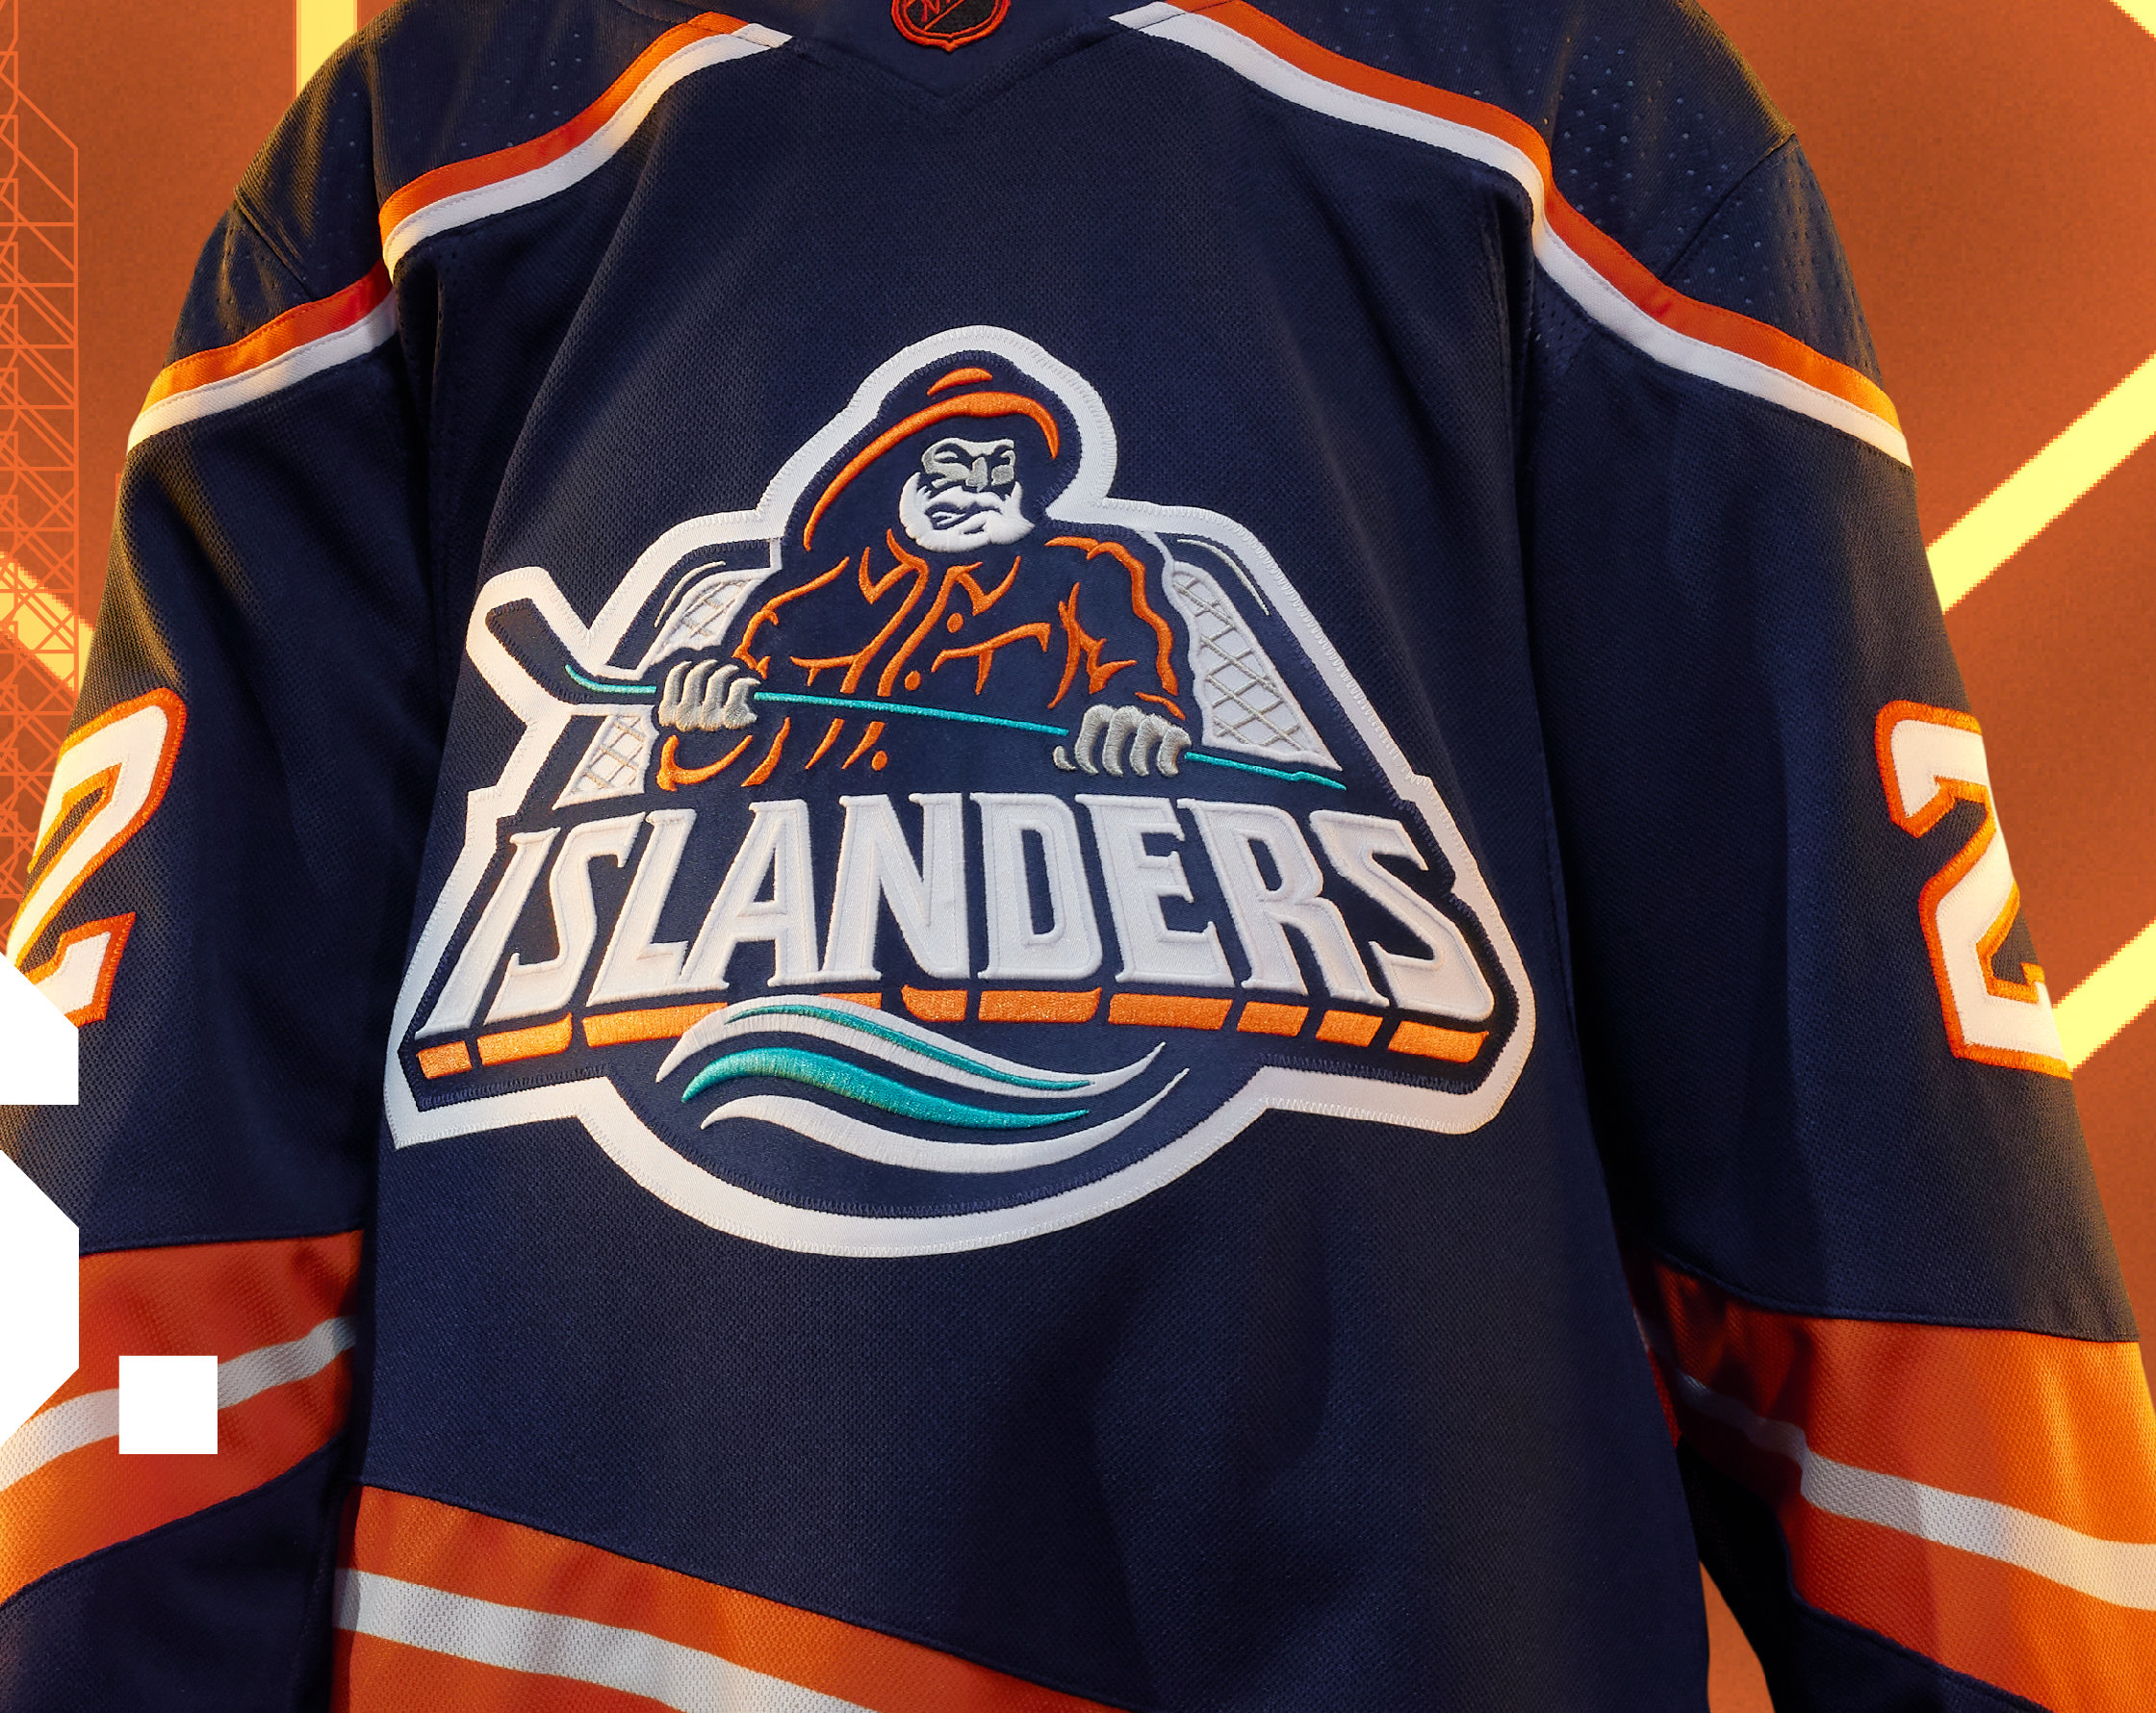 Islanders to wear mercilessly mocked 'Fisherman' jersey